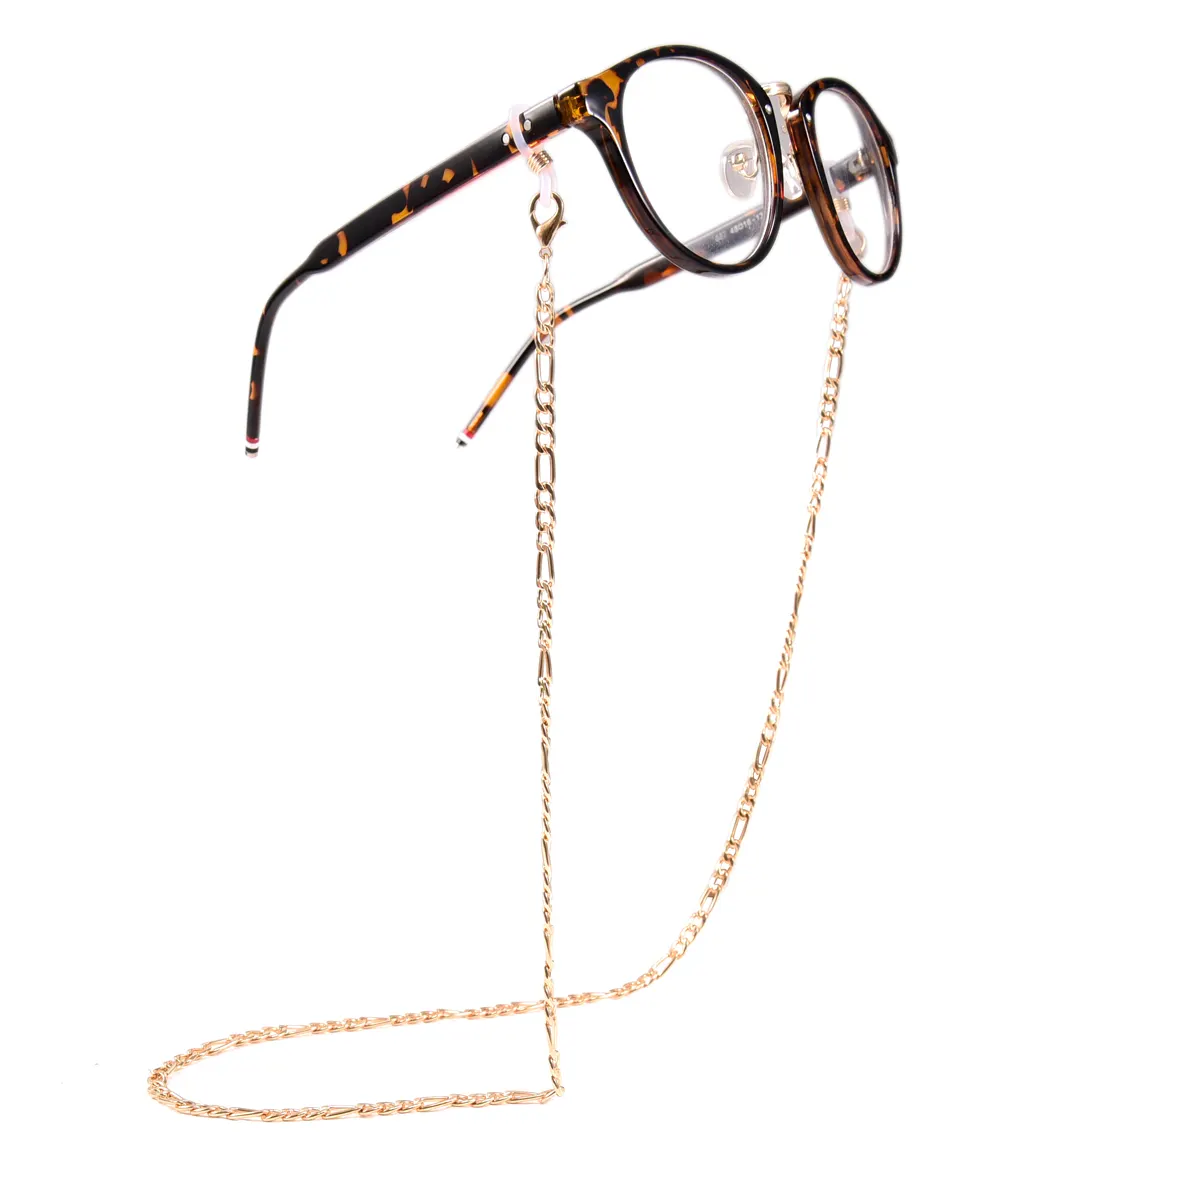 Cadena de cristal chapada en oro para gafas de sol unisex, correa para gafas de sol, soporte para el cuello, con cordón, accesorios